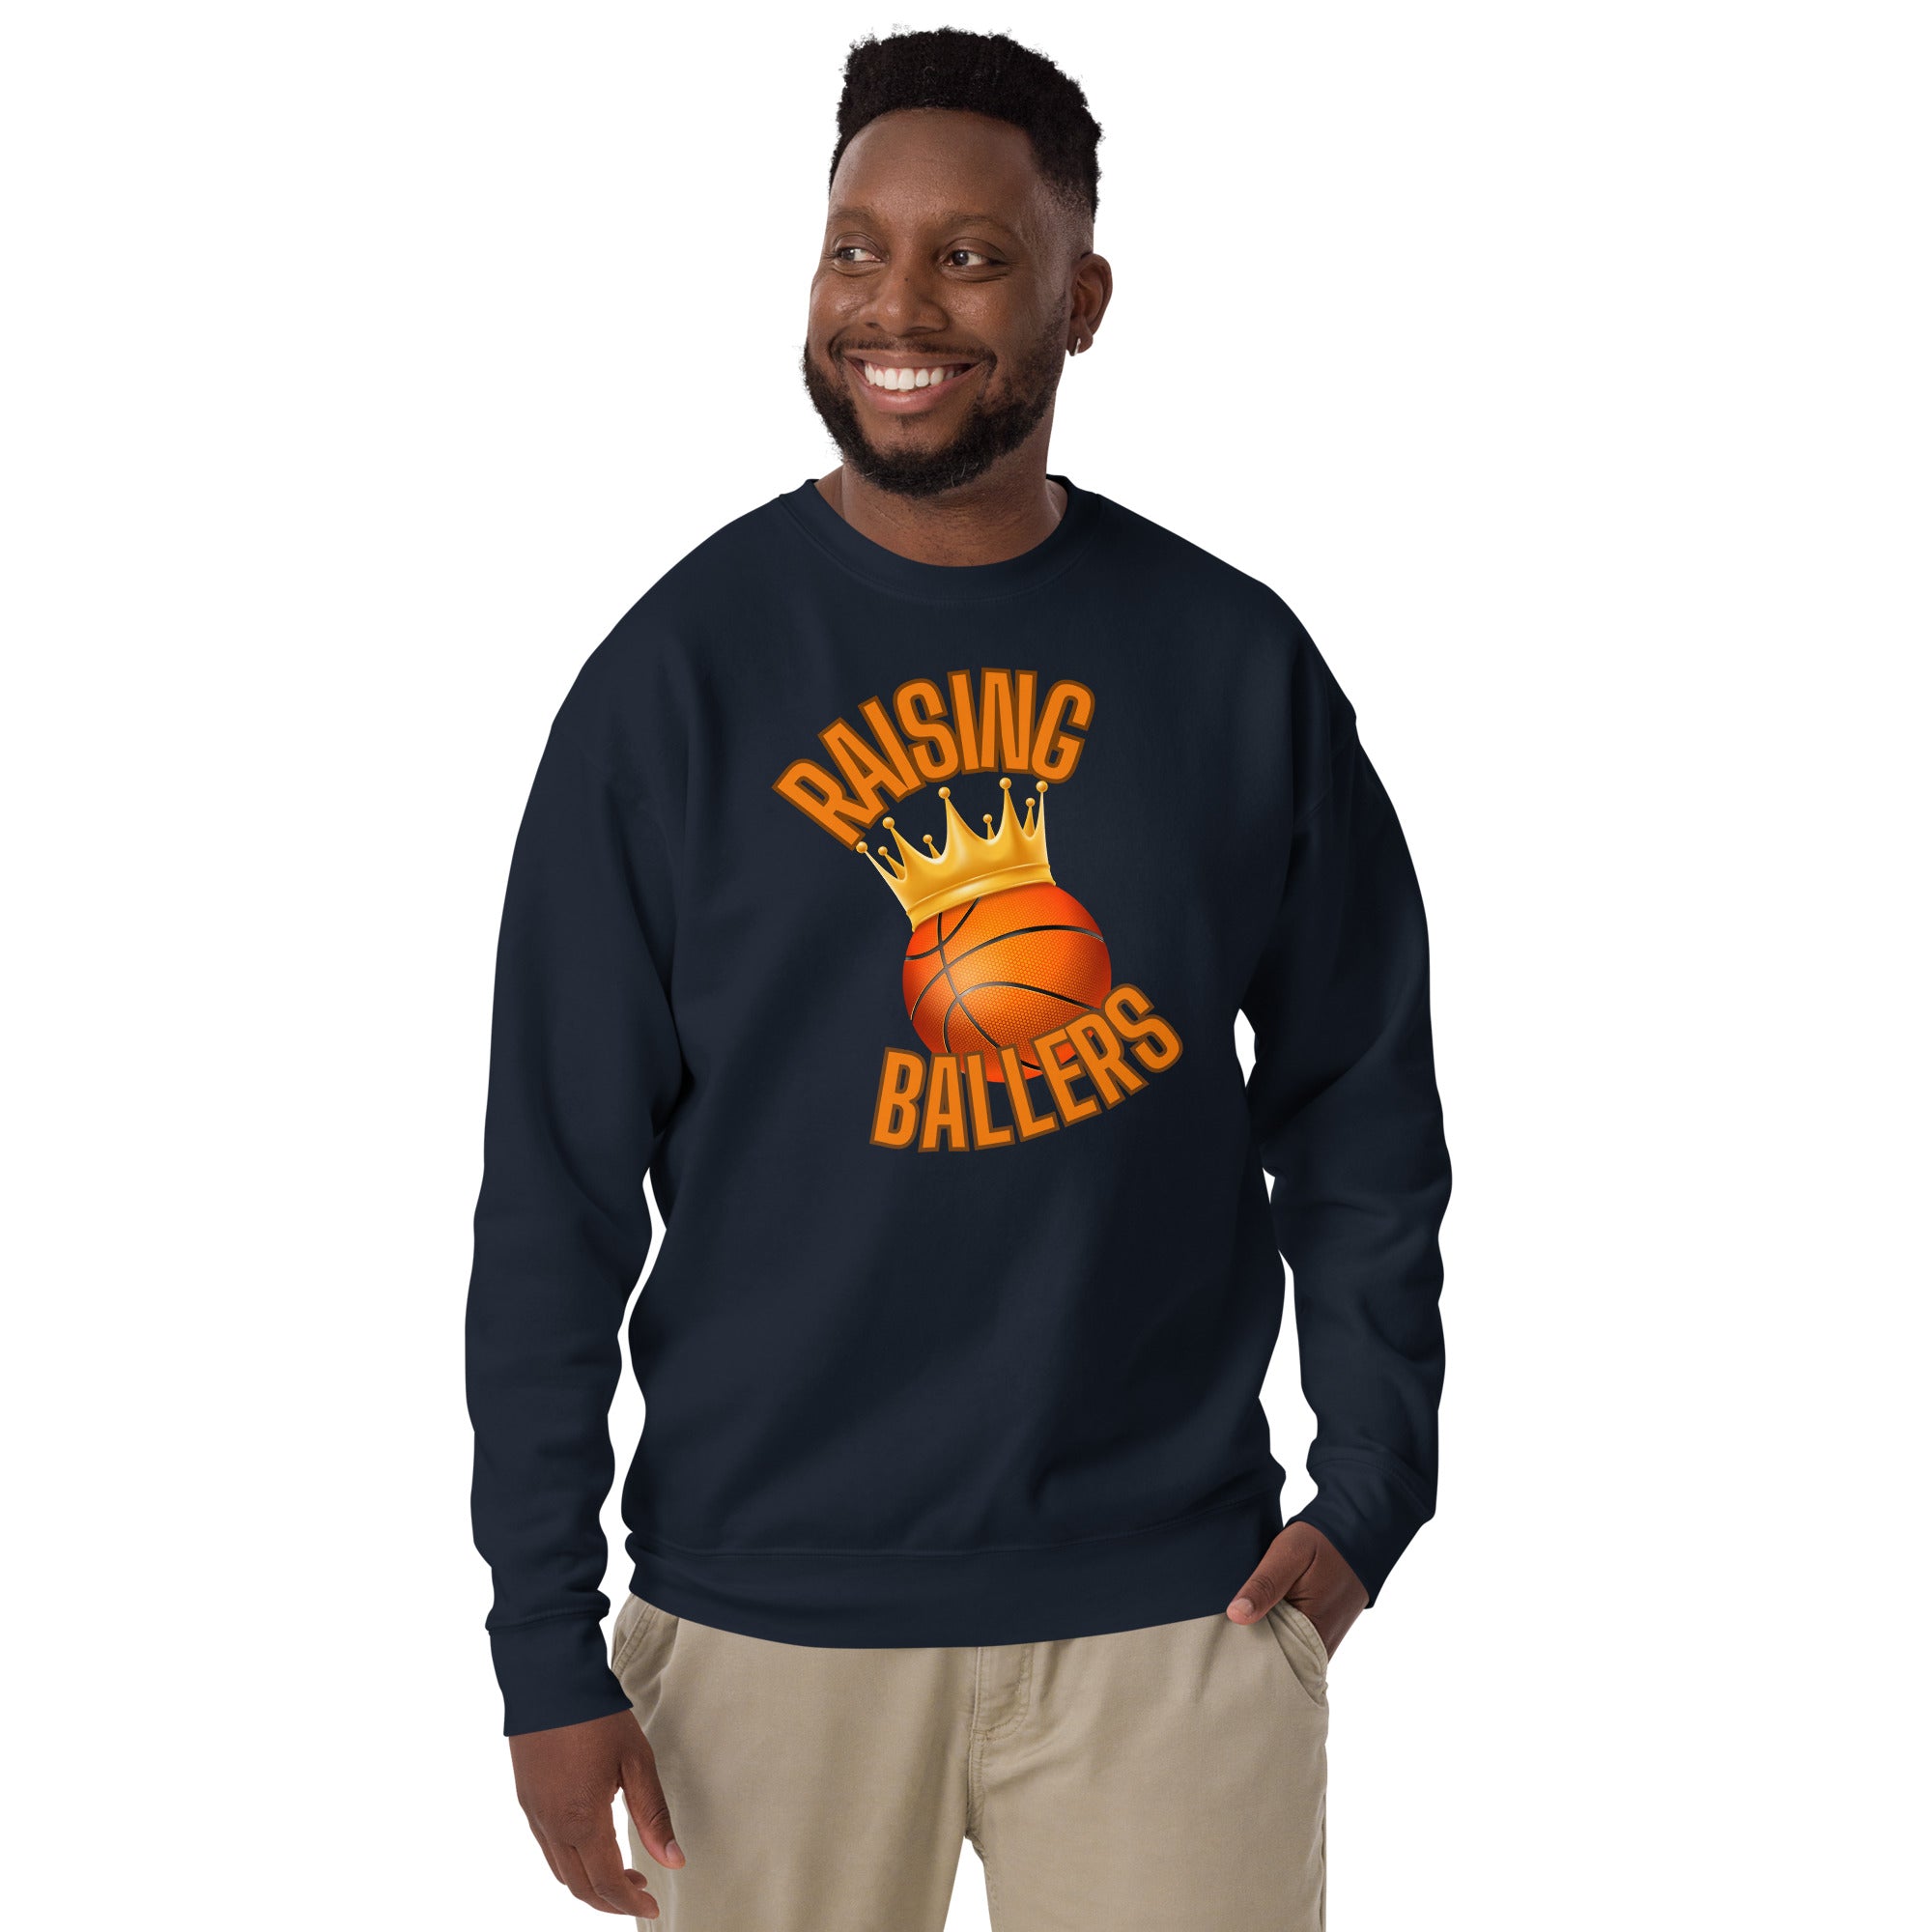 Raising Ballers Men's Heavy Crew Sweatshirt